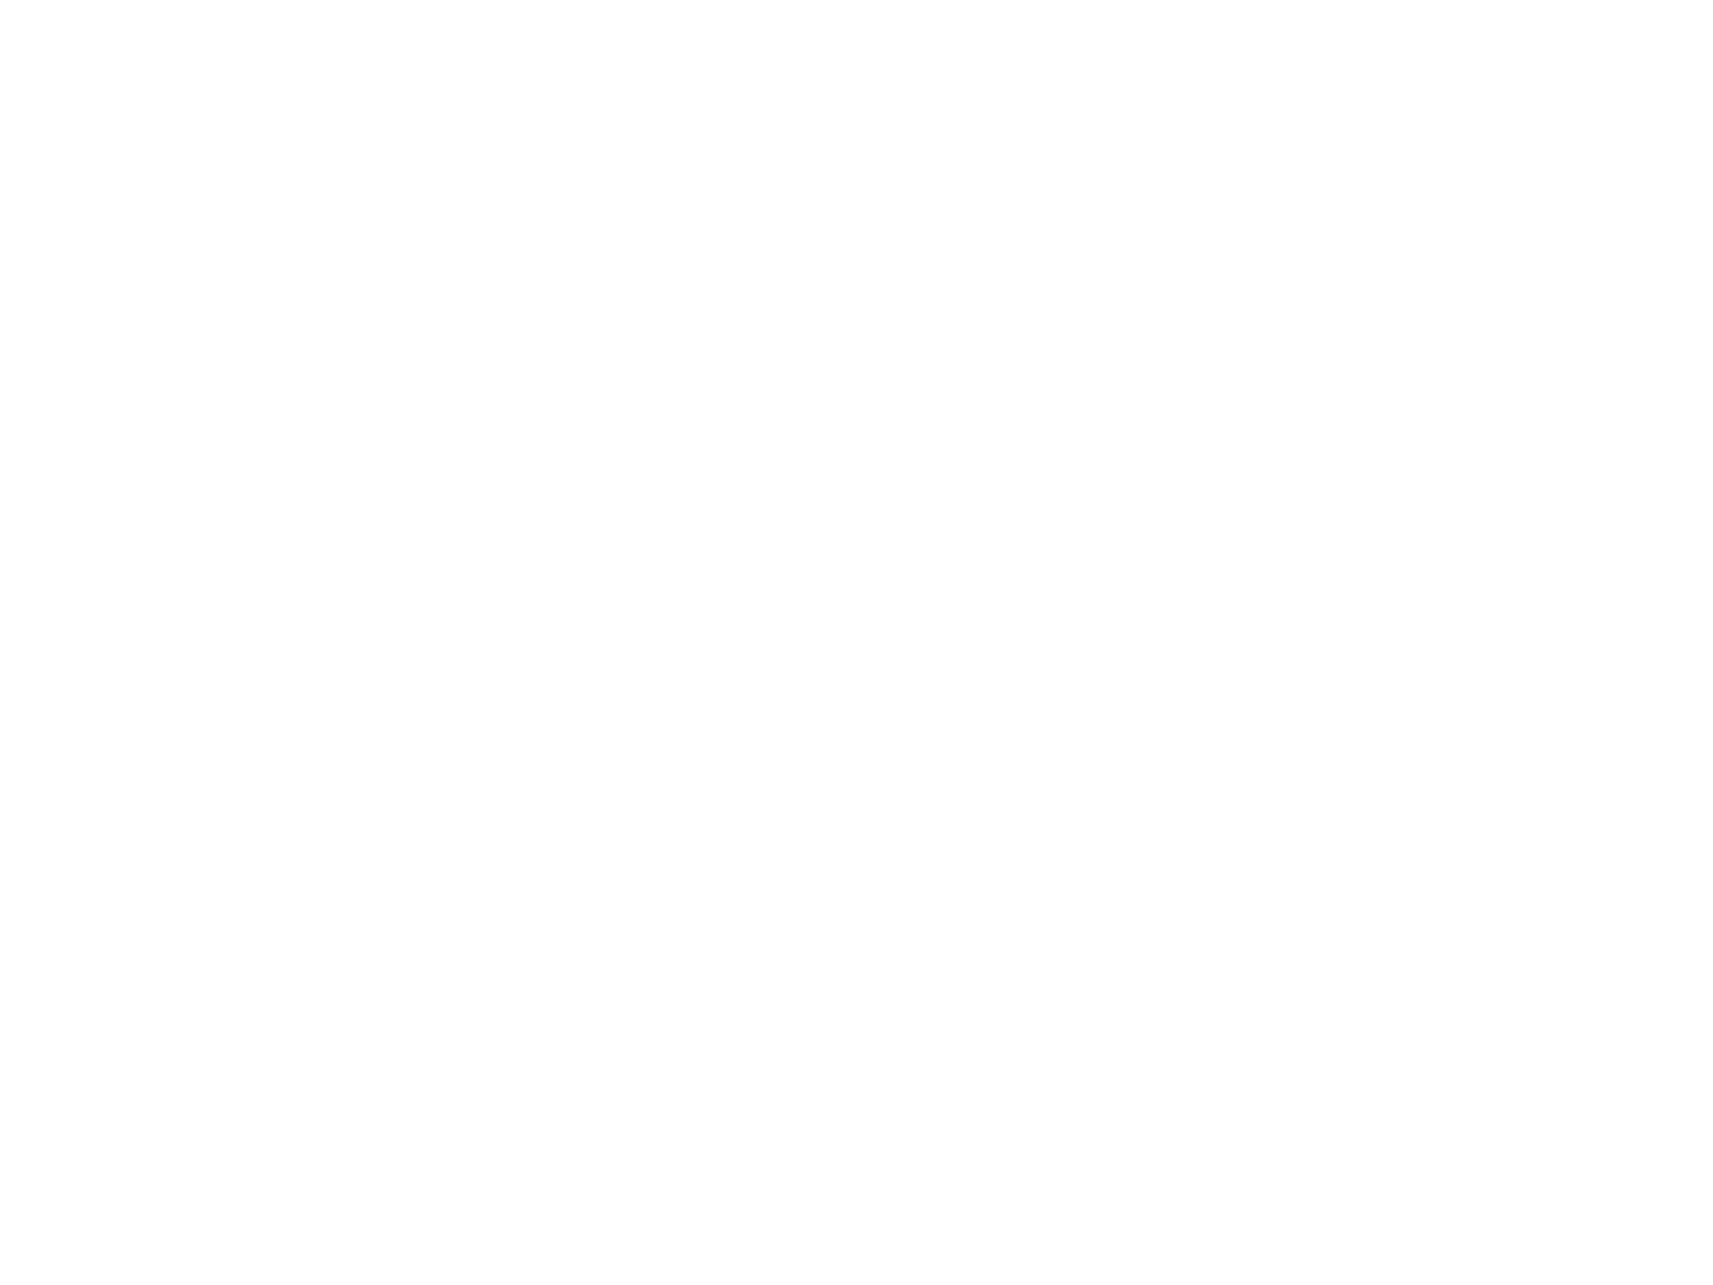 Nathan Barker